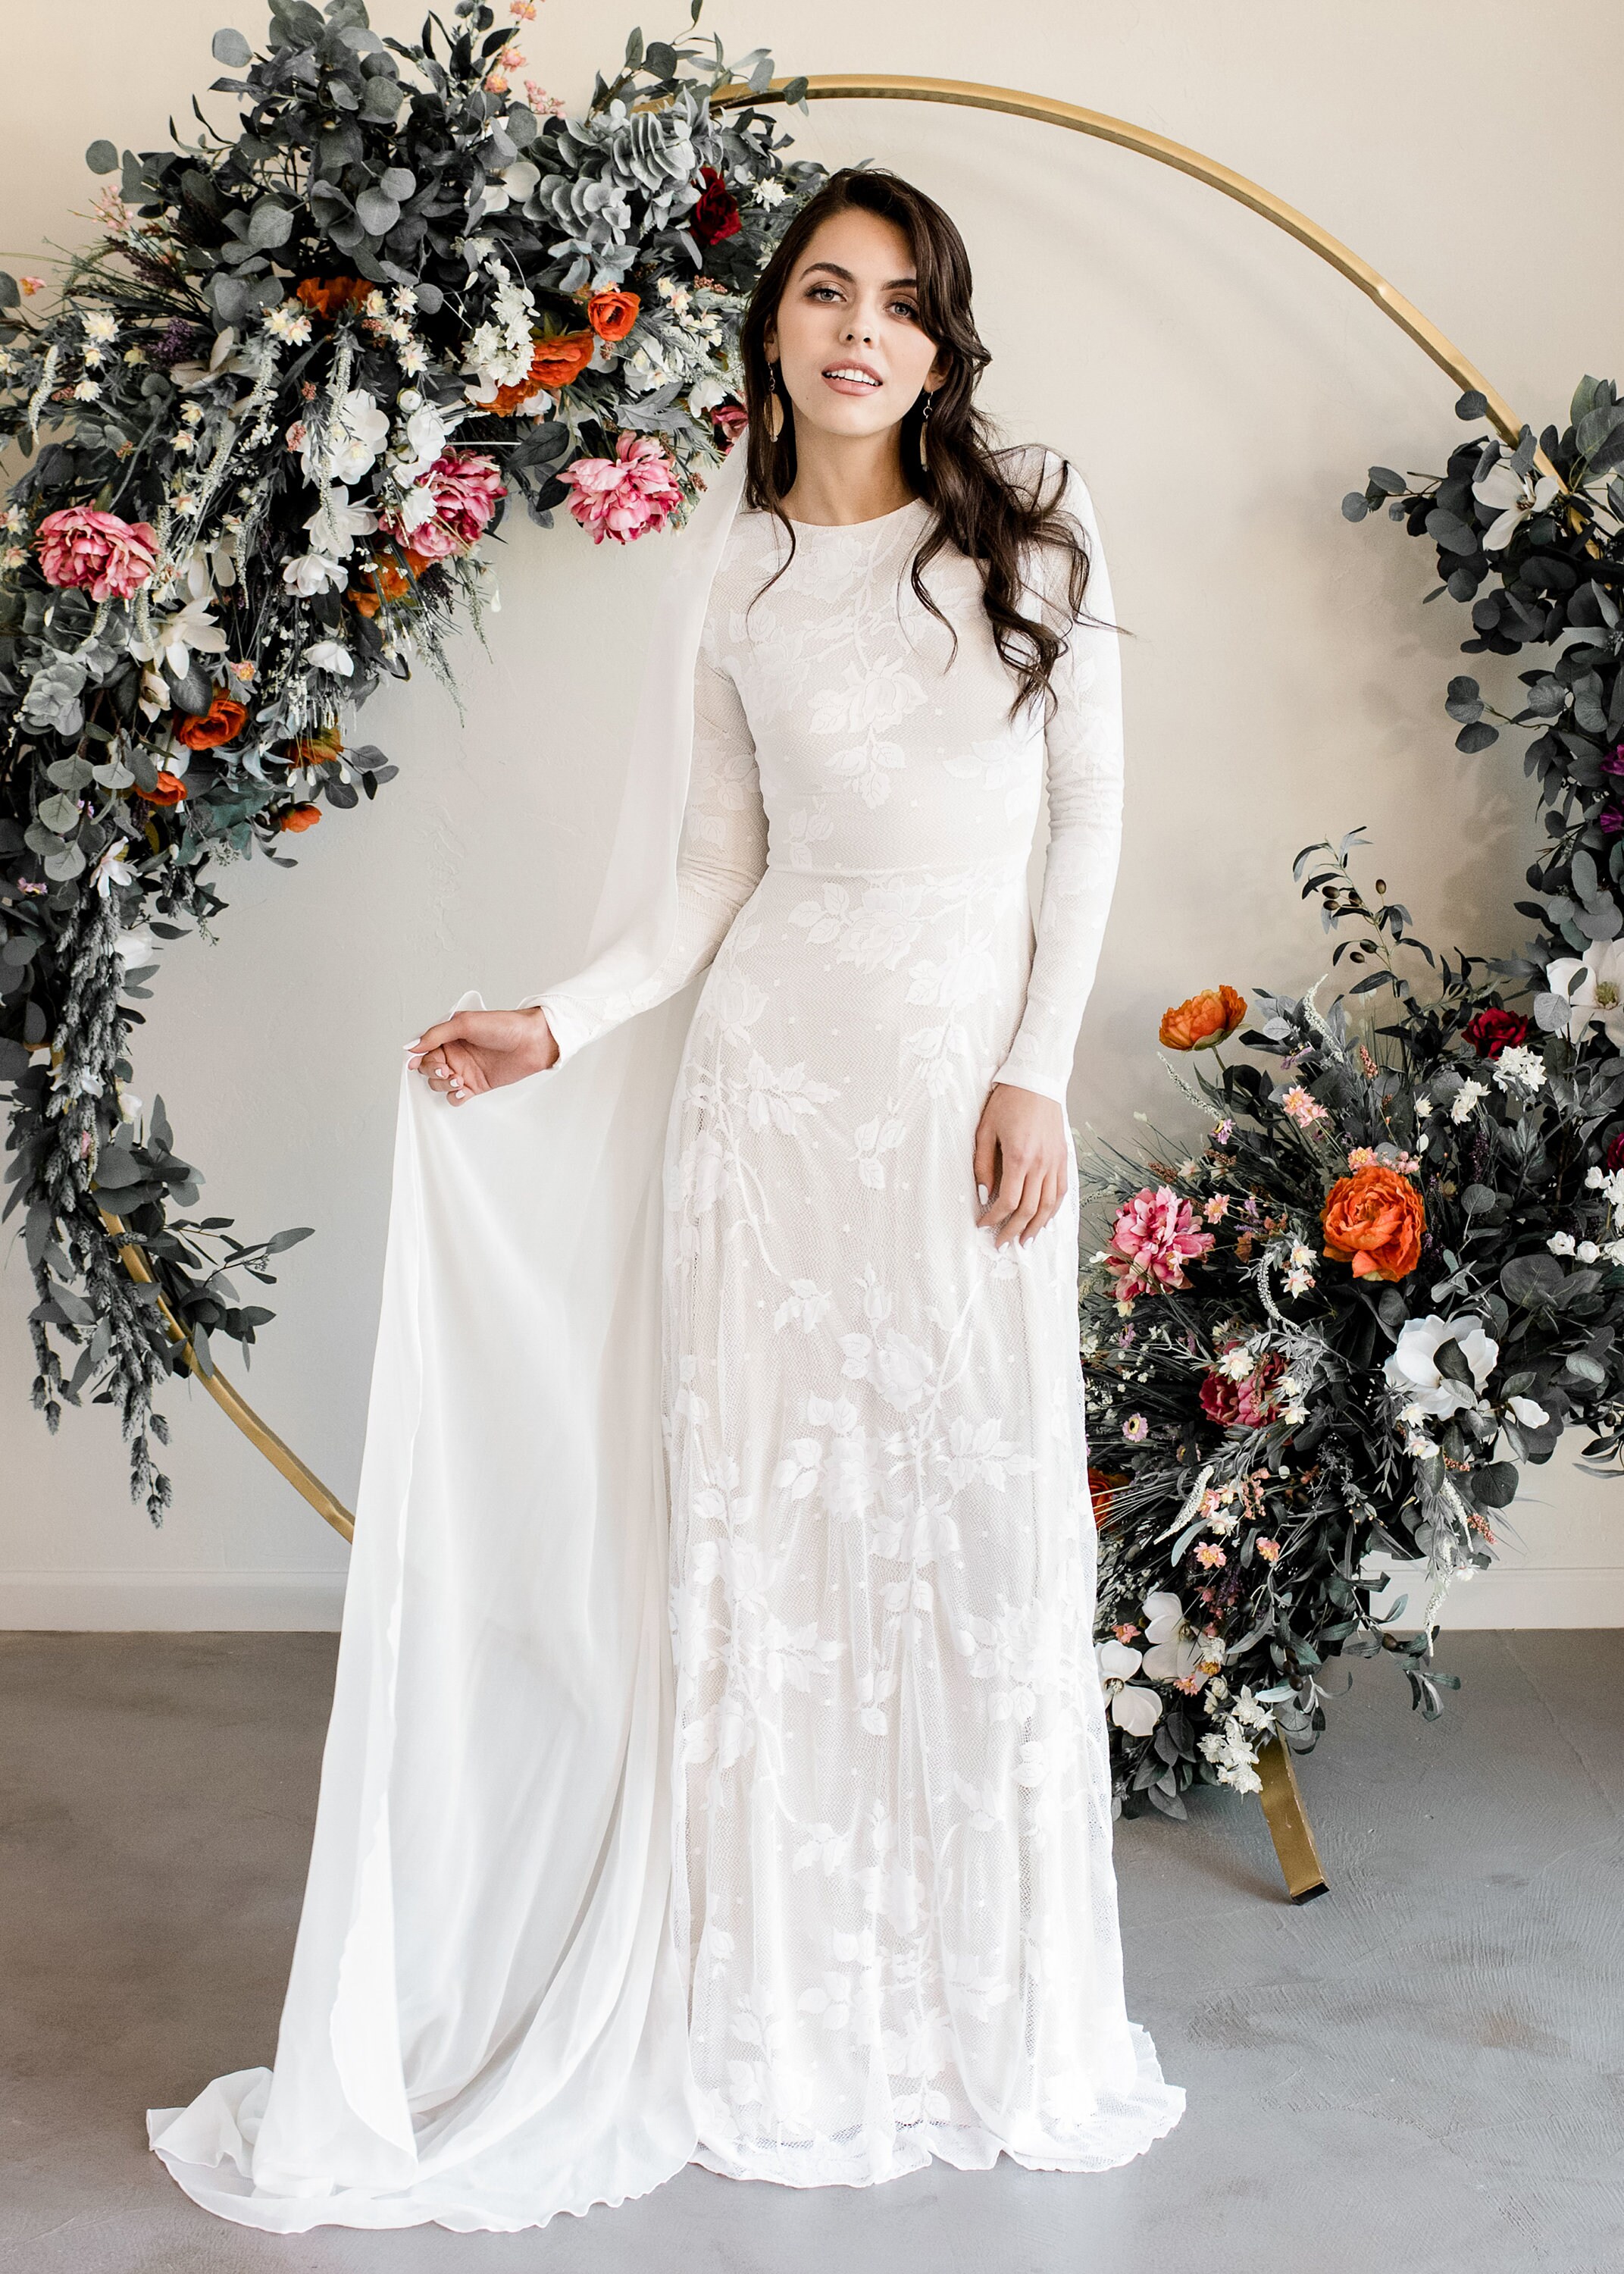 Long Sleeve Lace Wedding Dress Modest Wedding Dress Lace - Etsy